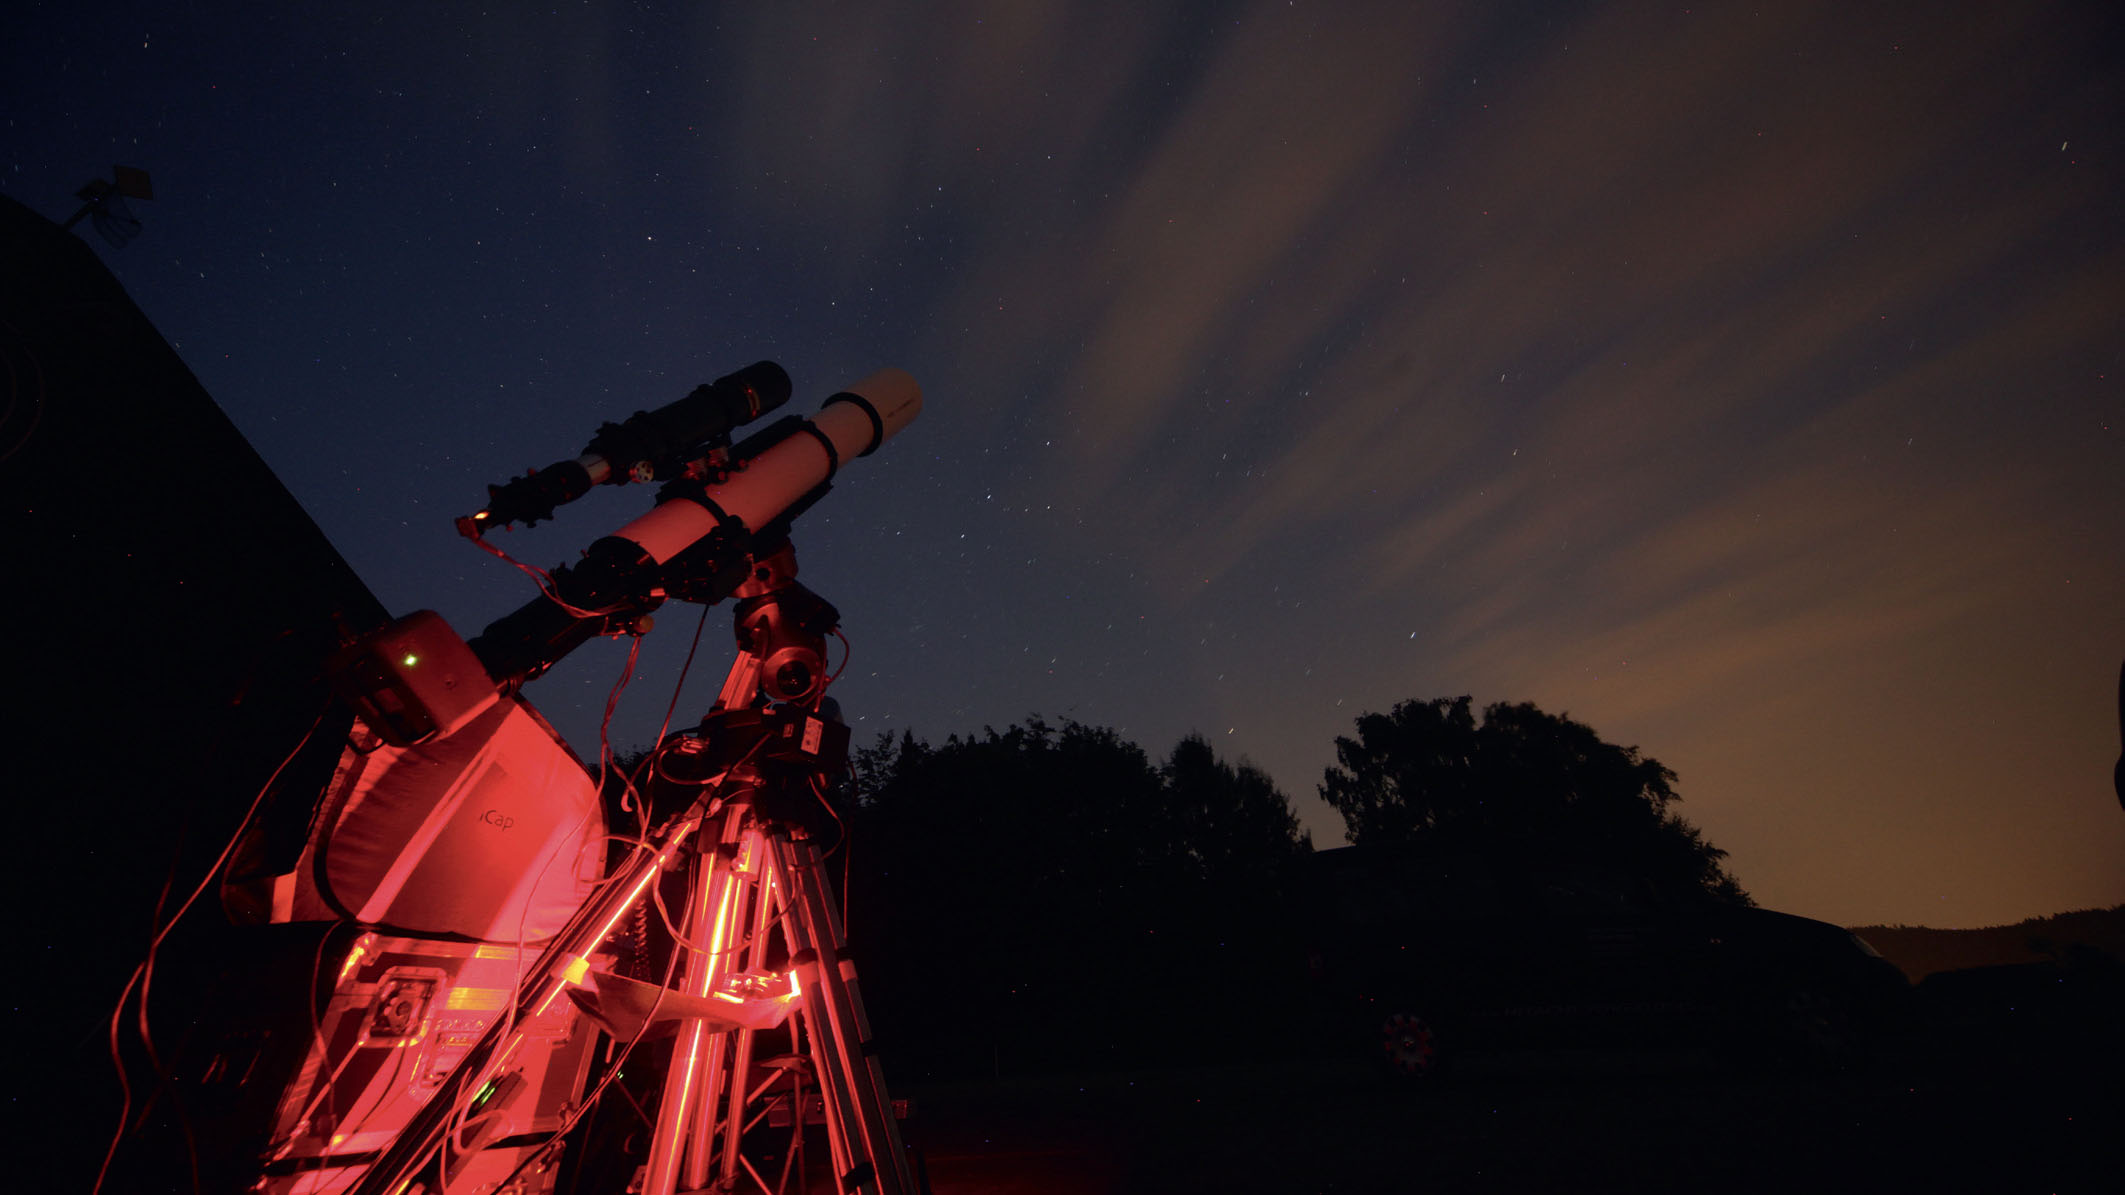 Des images parfaitement exposées, en toute certitude : télescope avec équipement d’autoguidage en action. Mario Weigand